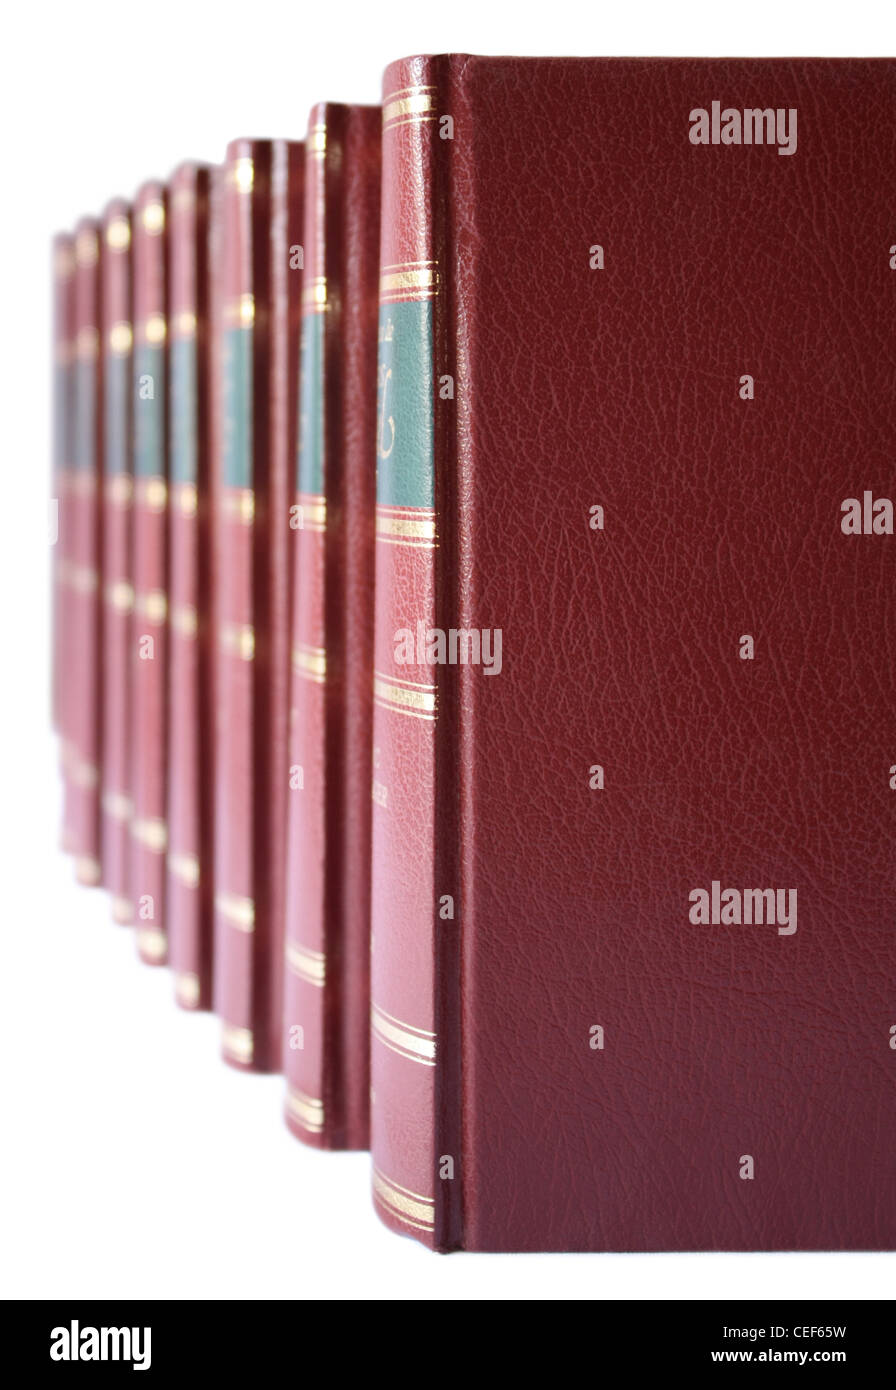 Reihe der Bücher mit fester Einband in rotem Leder auf einem weißen Hintergrund. Stockfoto